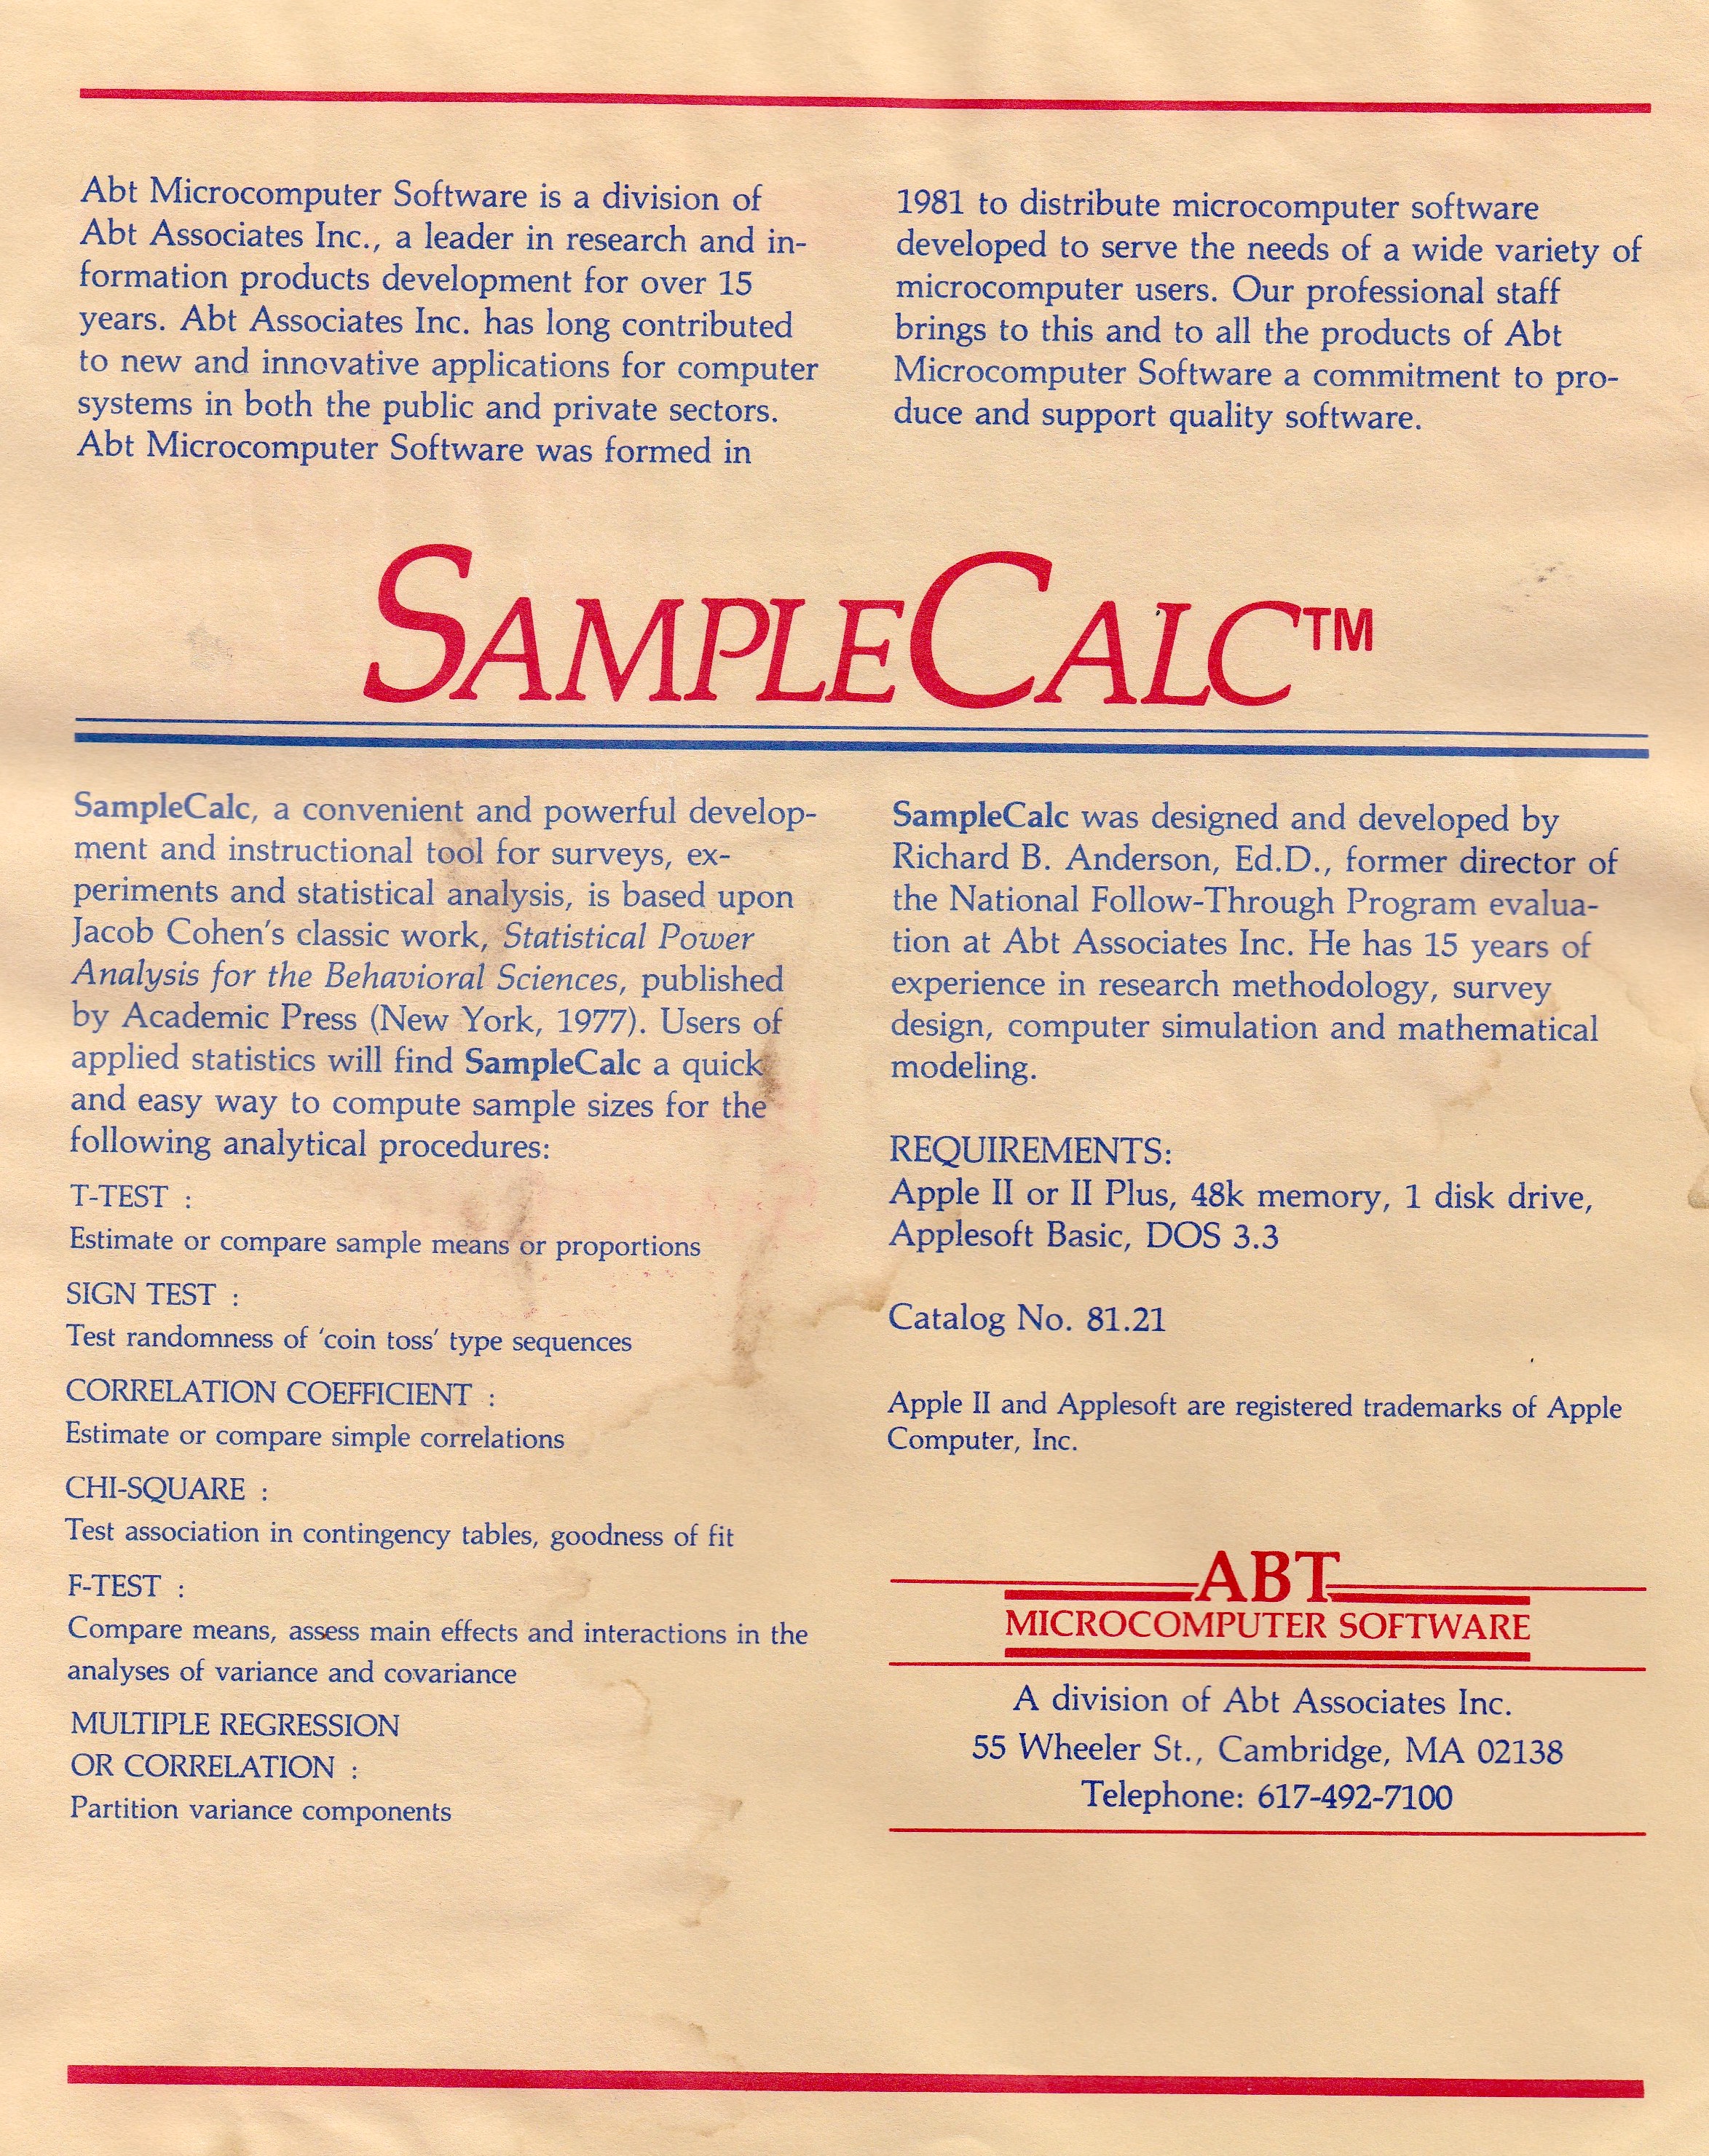 SampleCalc